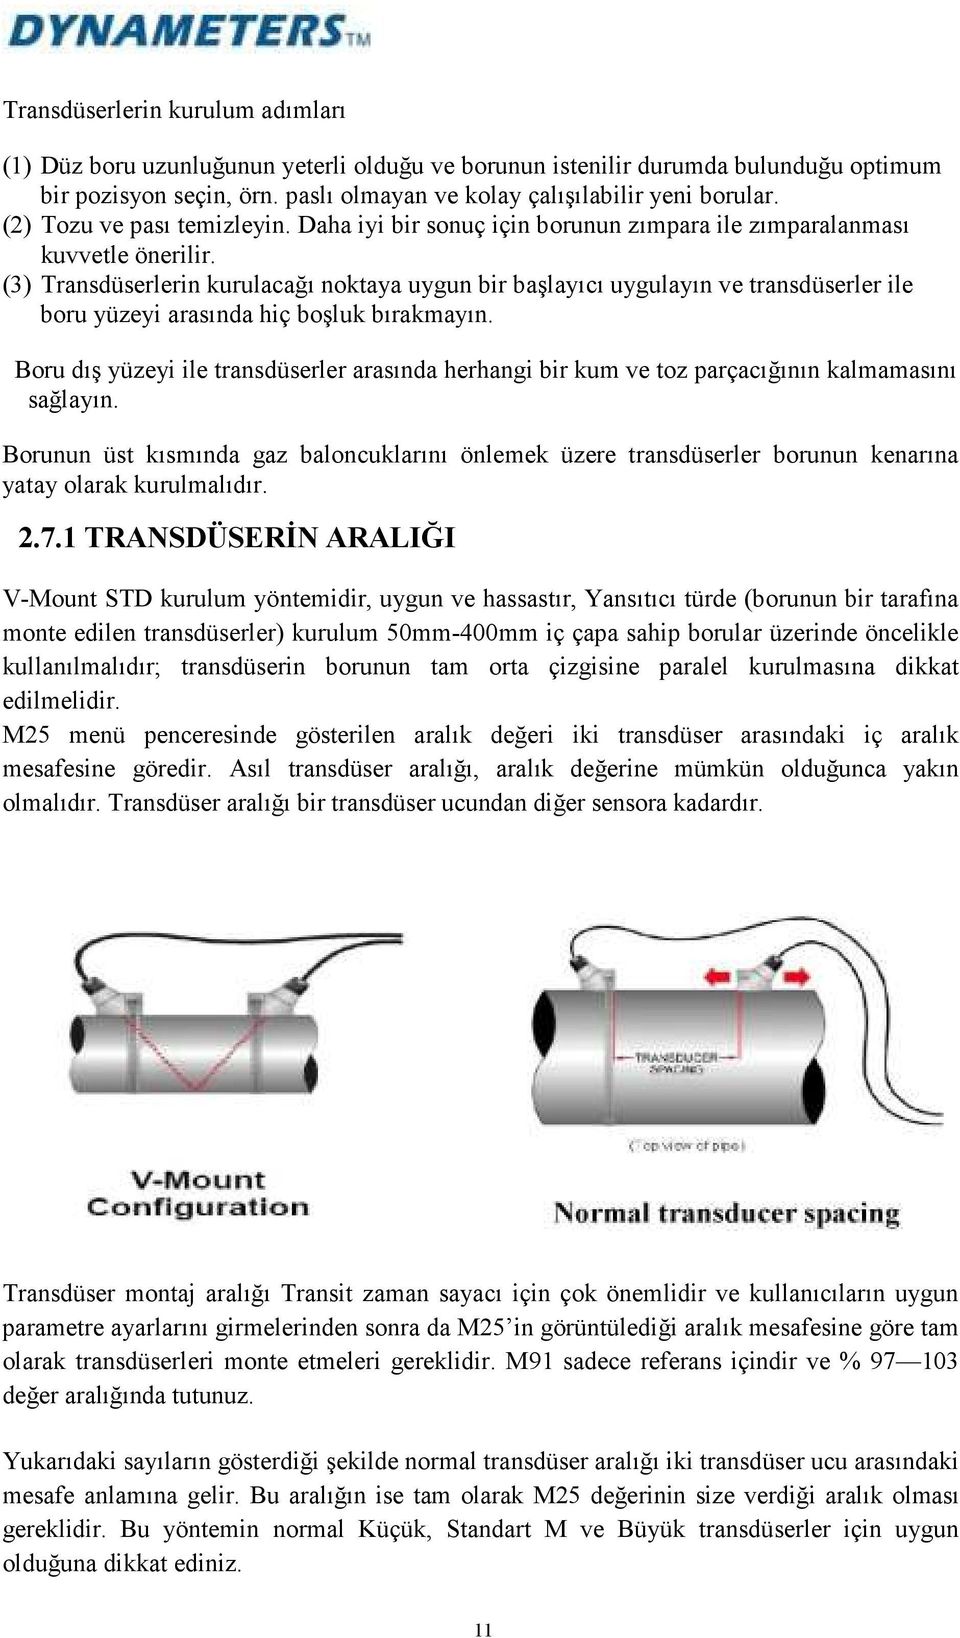 (3) Transdüserlerin kurulacağı noktaya uygun bir başlayıcı uygulayın ve transdüserler ile boru yüzeyi arasında hiç boşluk bırakmayın.